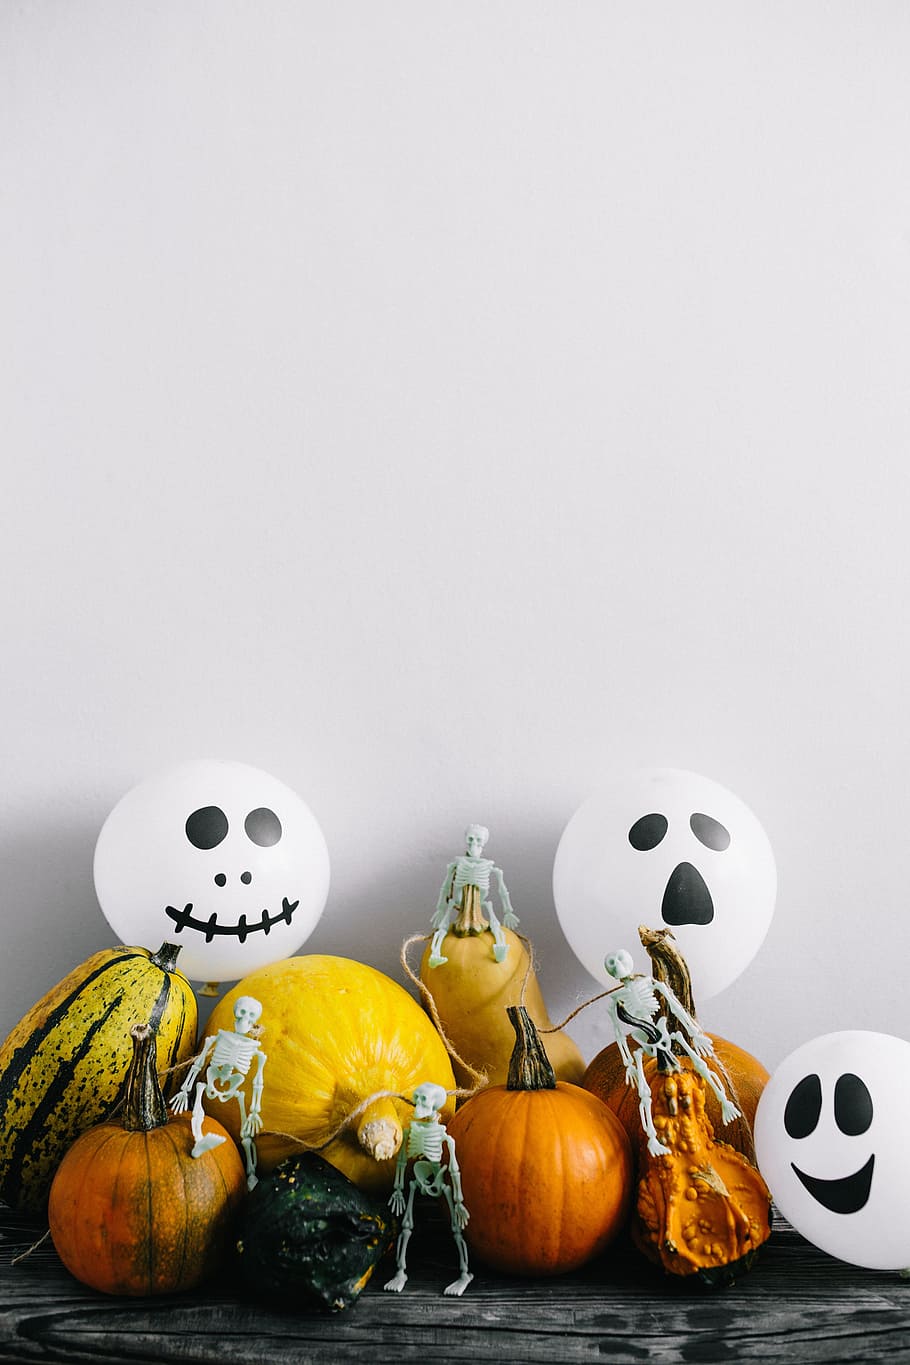 тыквы и хэллоуин, овощи, осень, fall, pumpkins, funny, halloween, ghosts, boo, Еда и напитки